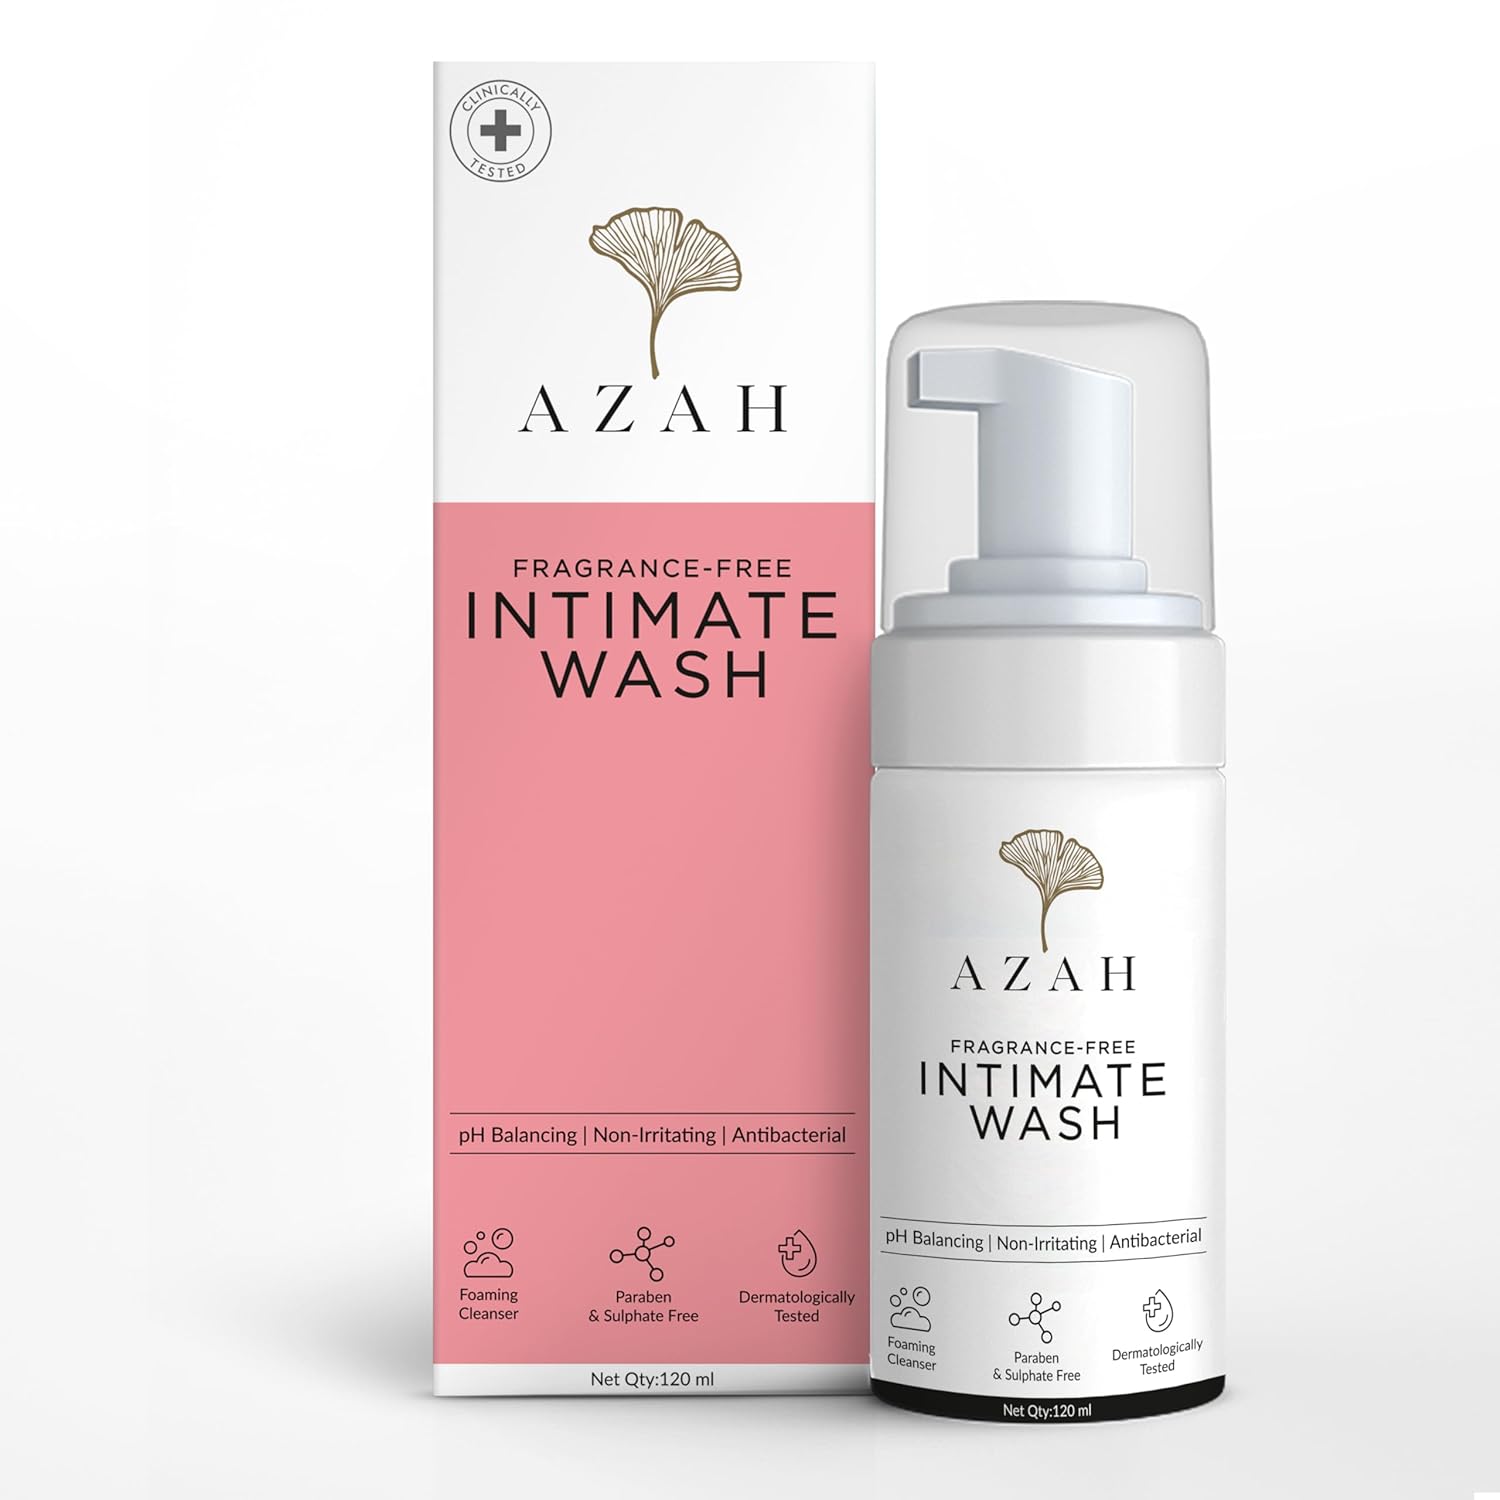 Azah: Promoting Feminine Hygiene